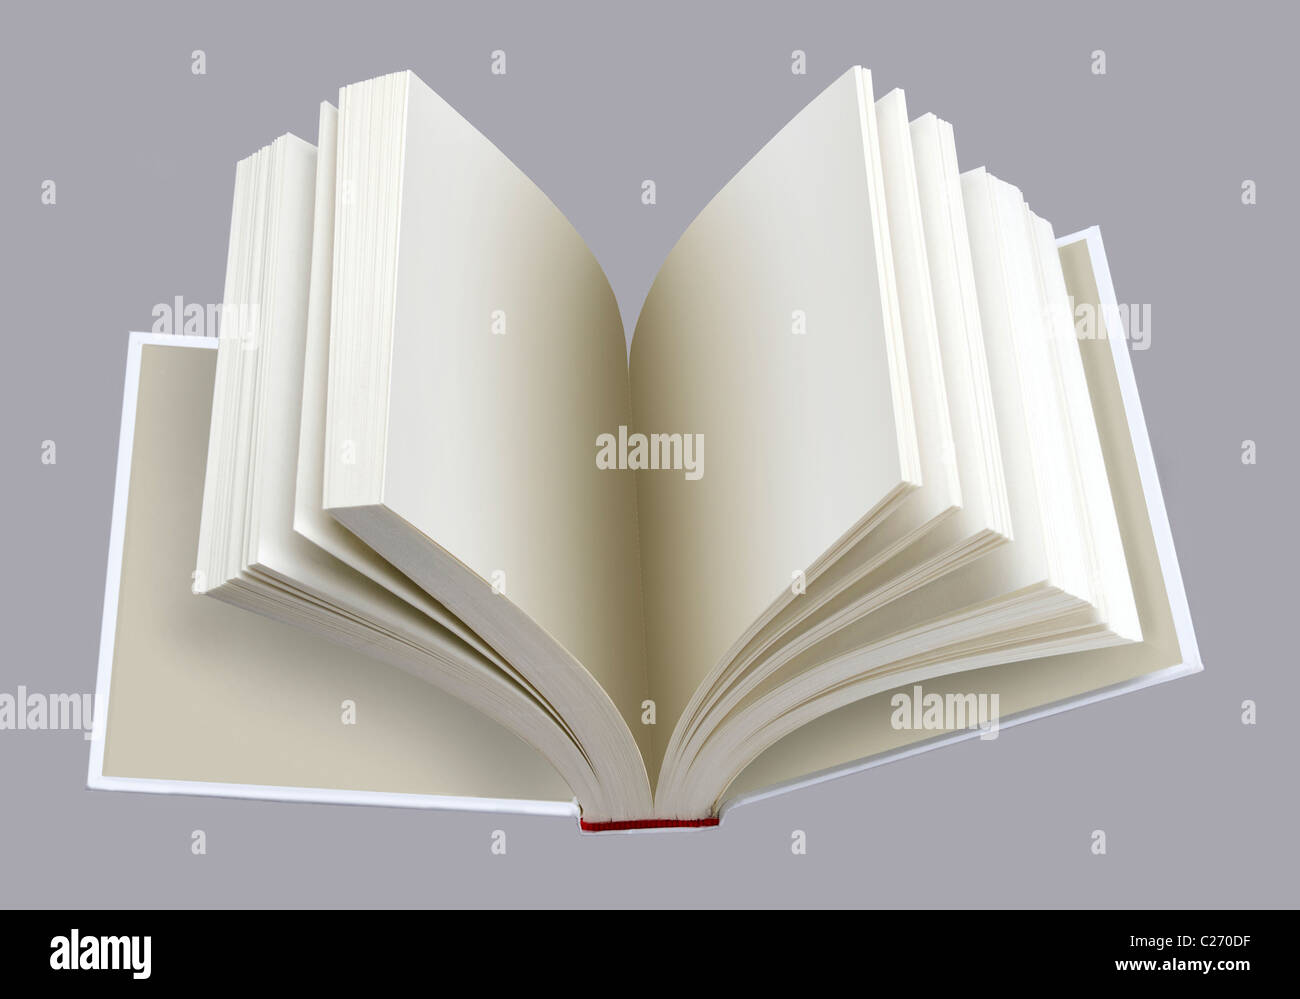 Livre ouvert avec les pages à l'intérieur lisse, pour une conception de la mise en page Banque D'Images